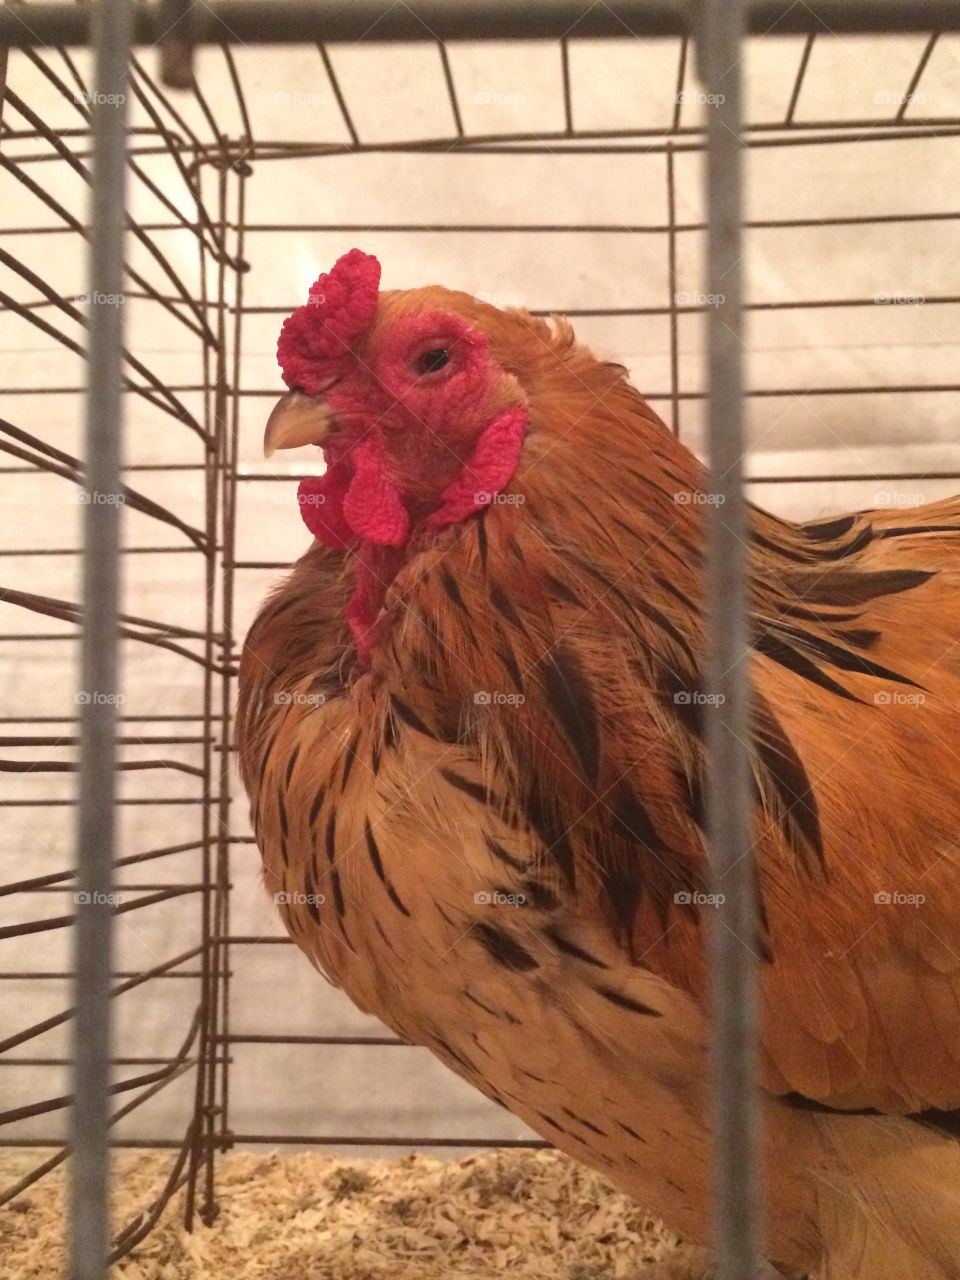 Chicken's stare 
